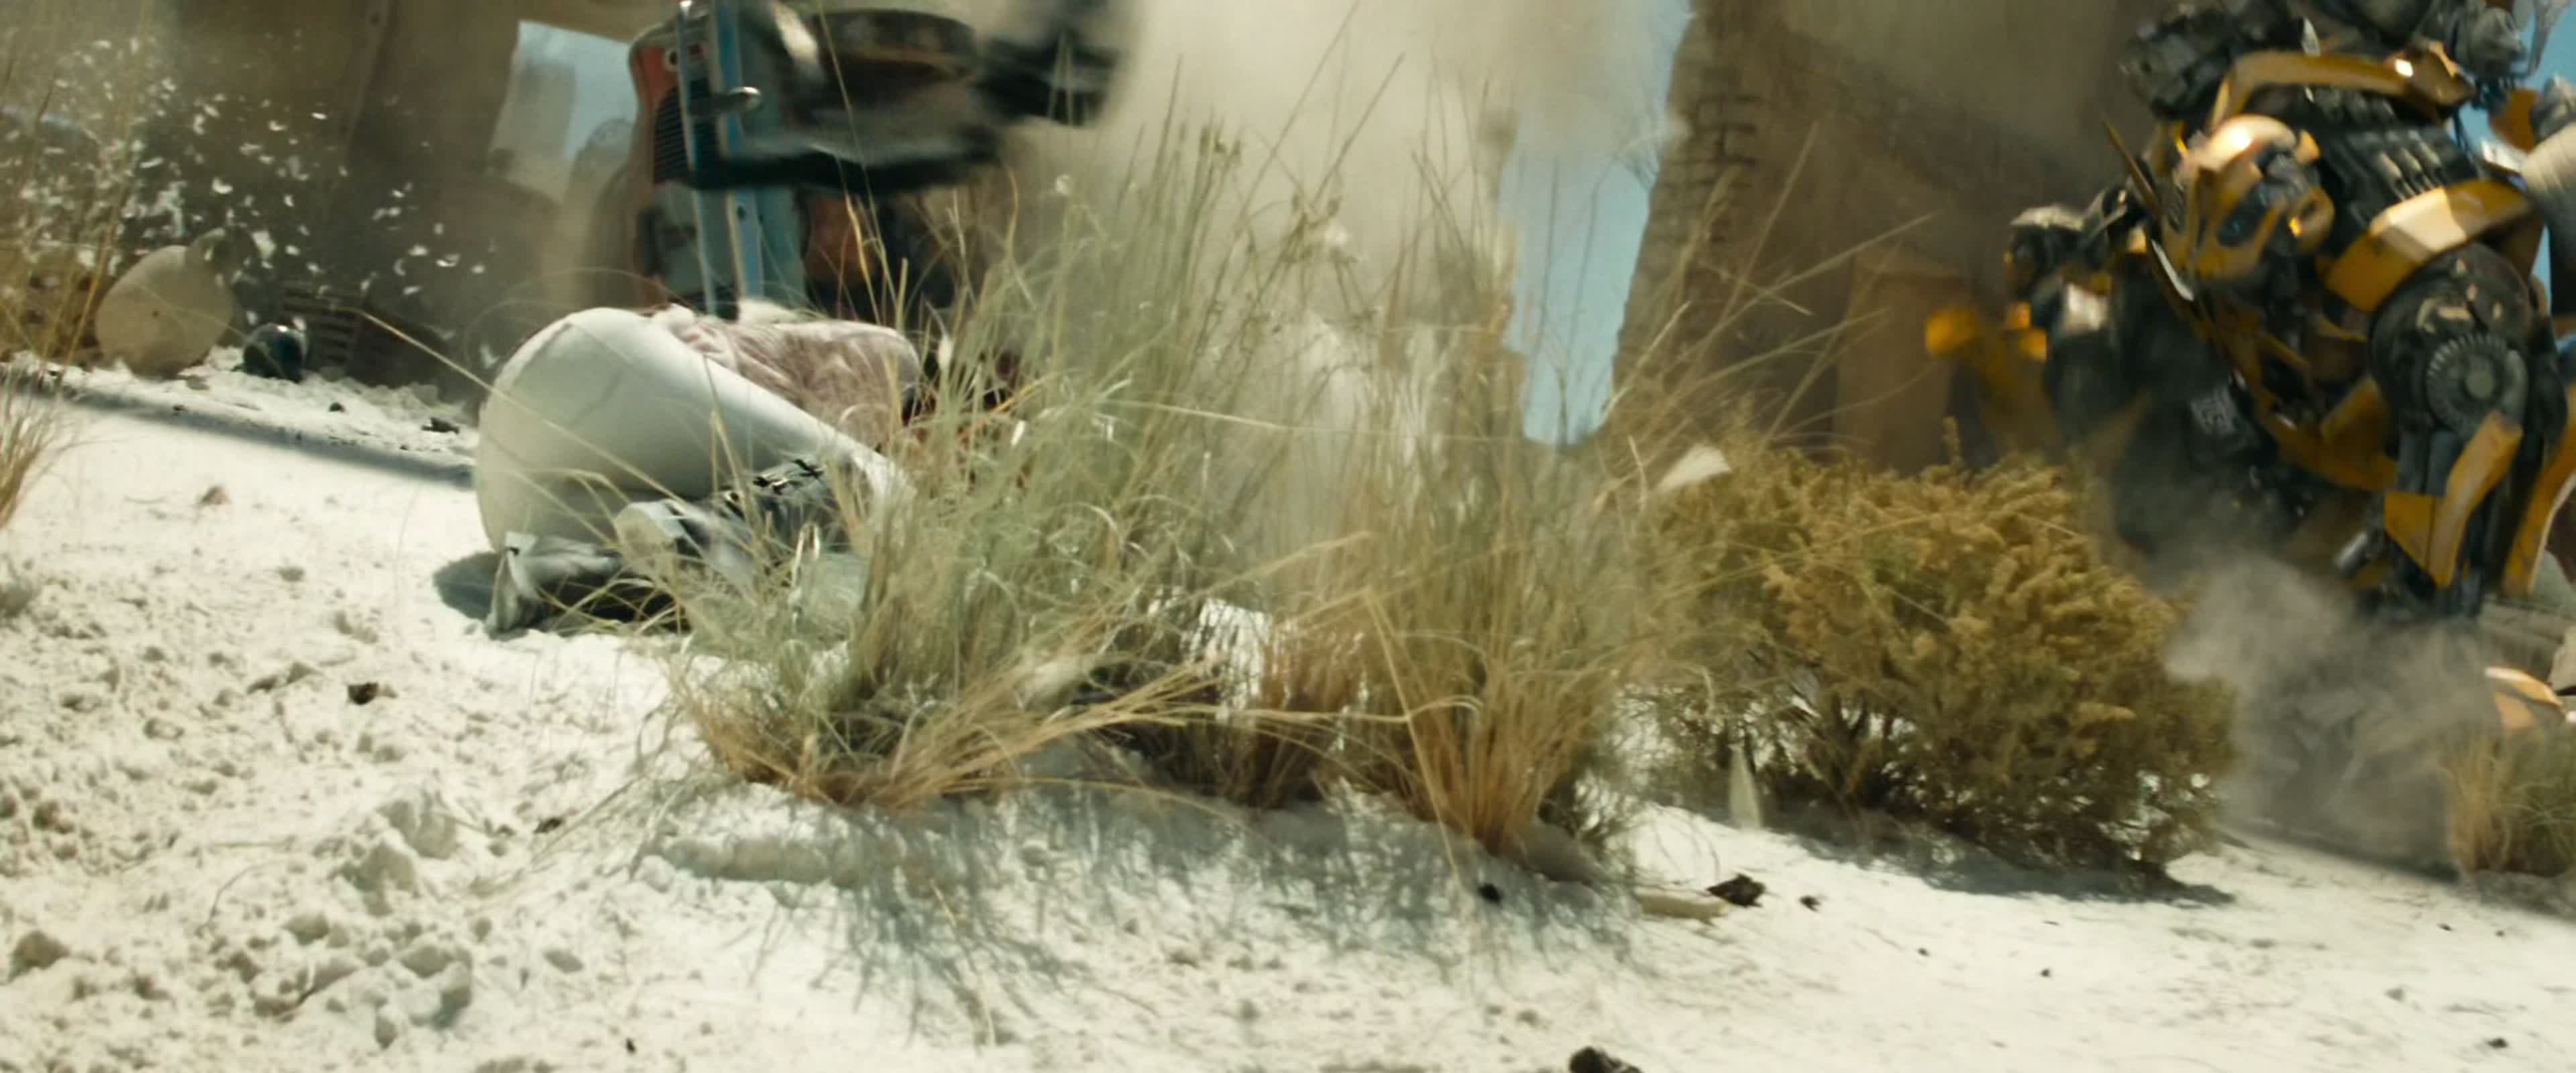 Loading Screenshot for Transformers: Revenge of the Fallen (2009)